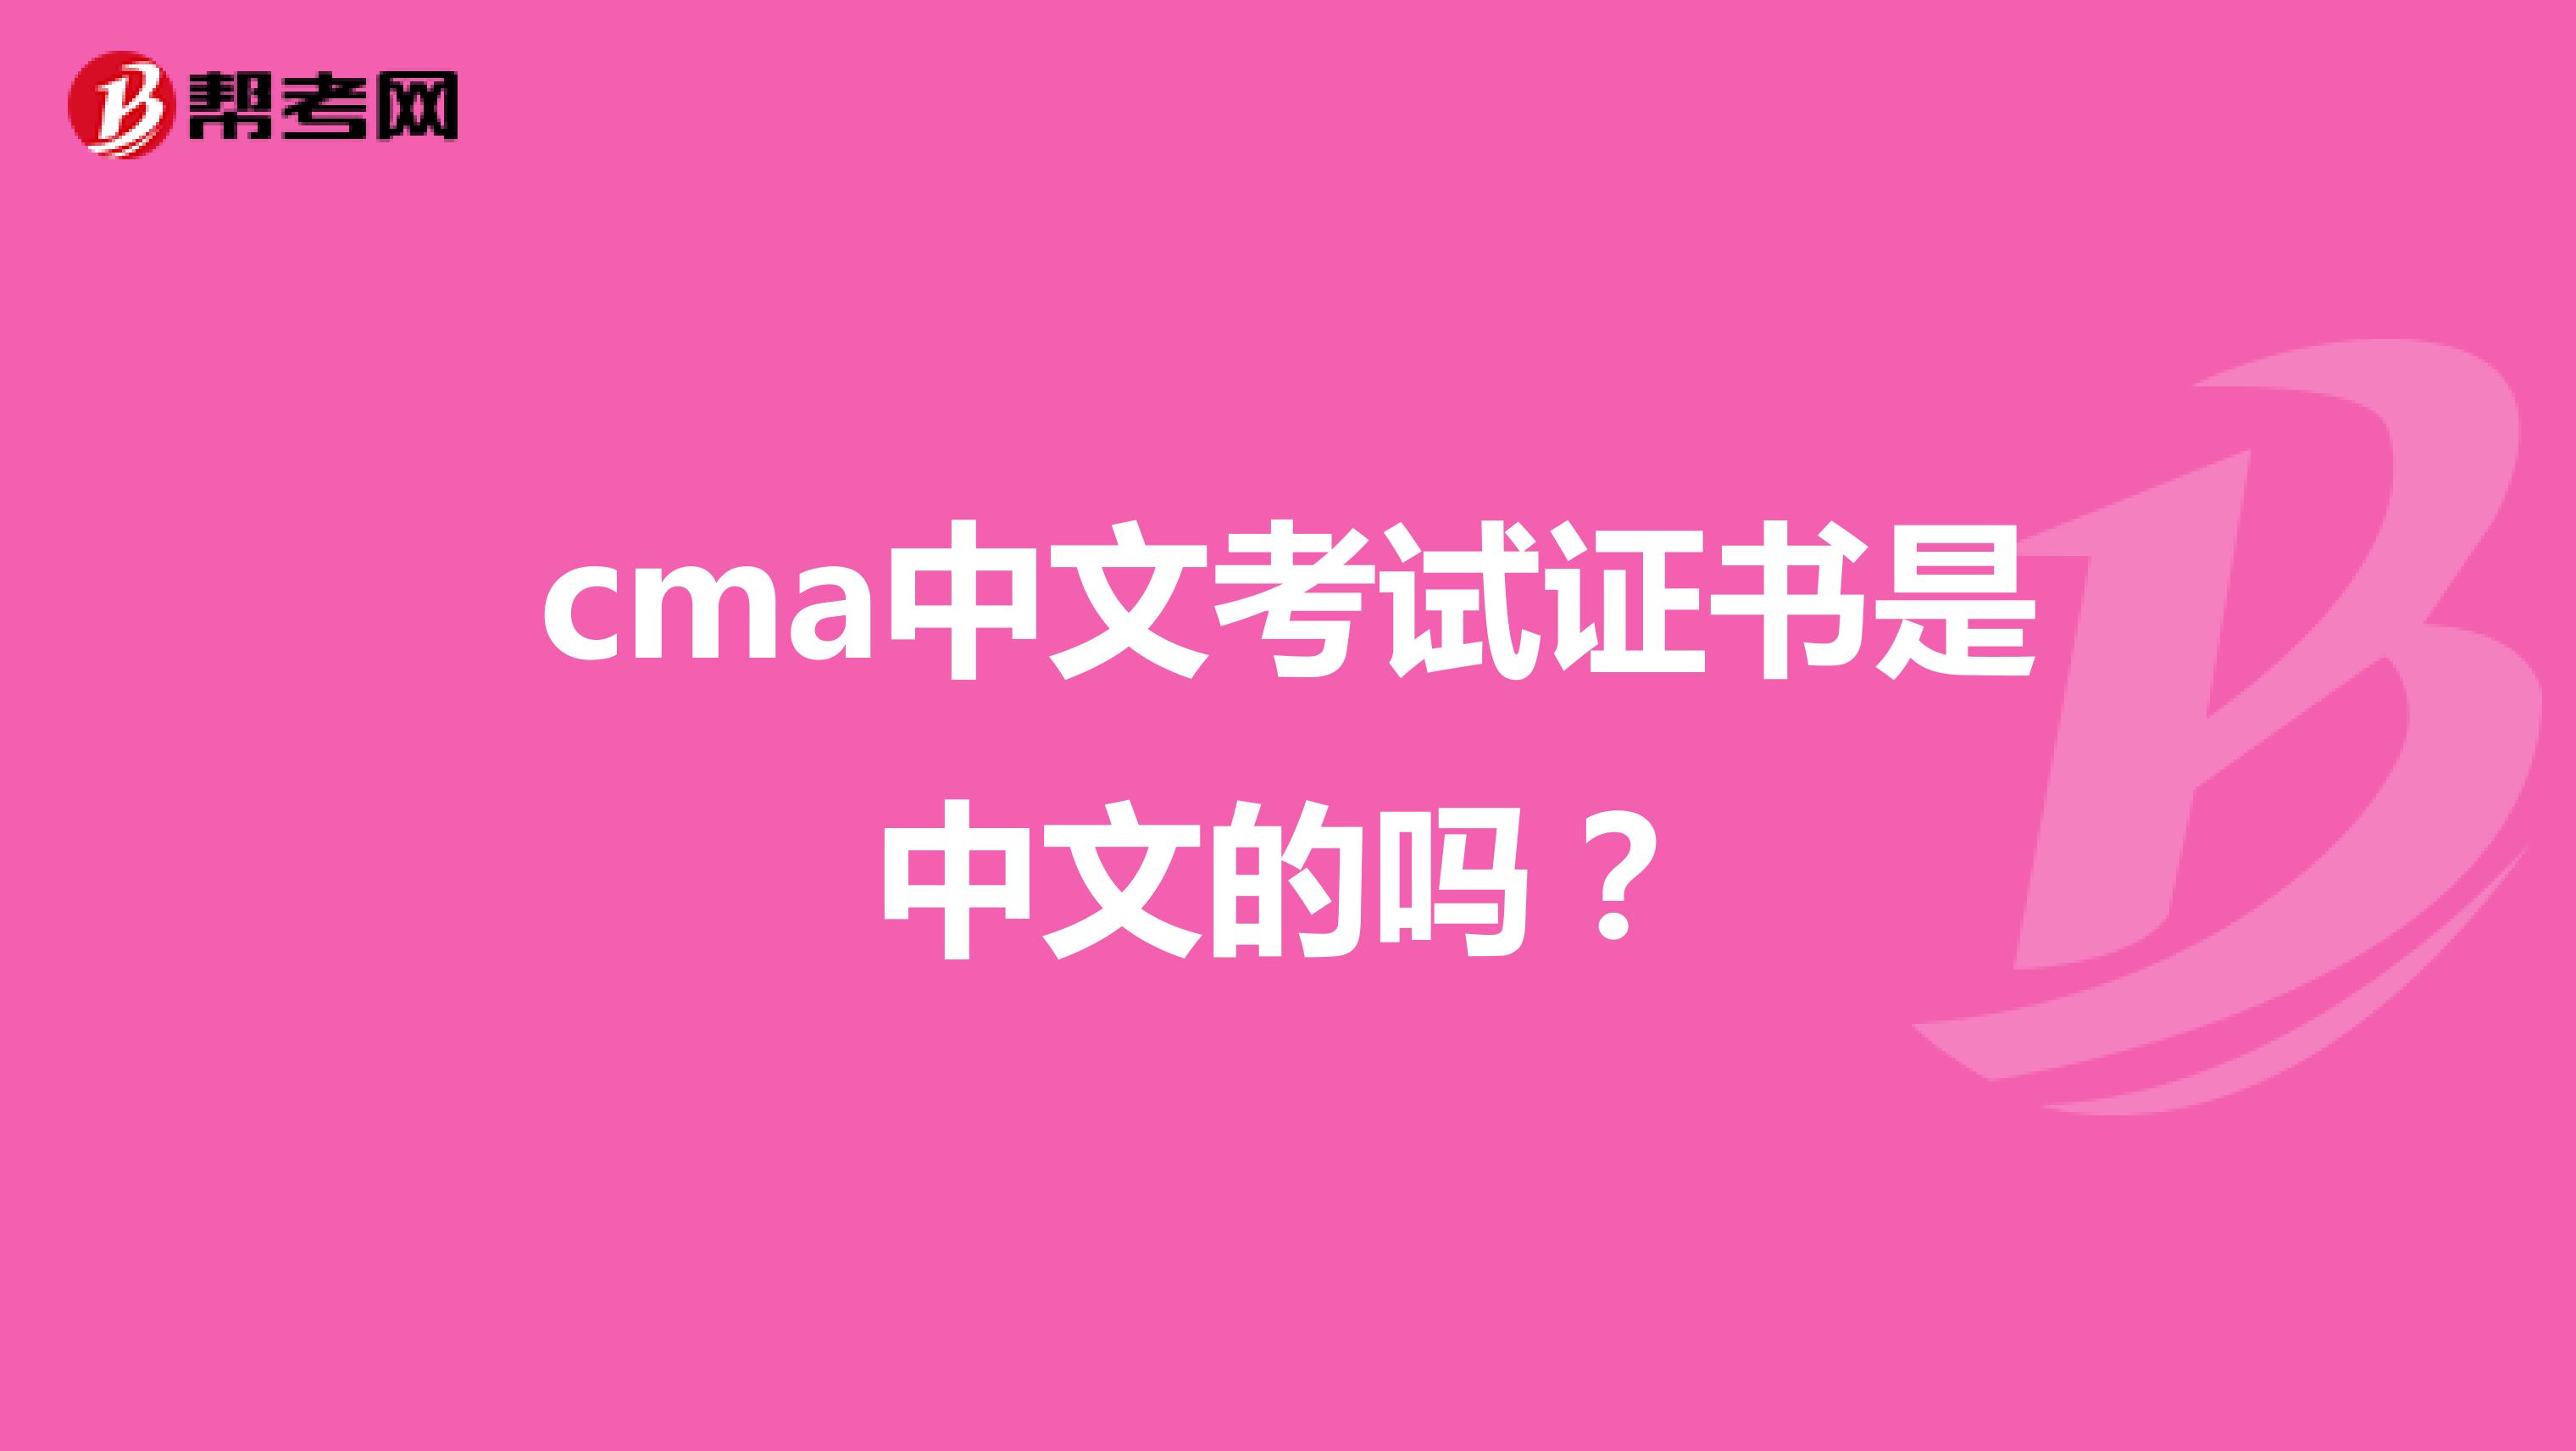 cma中文考试证书是中文的吗？